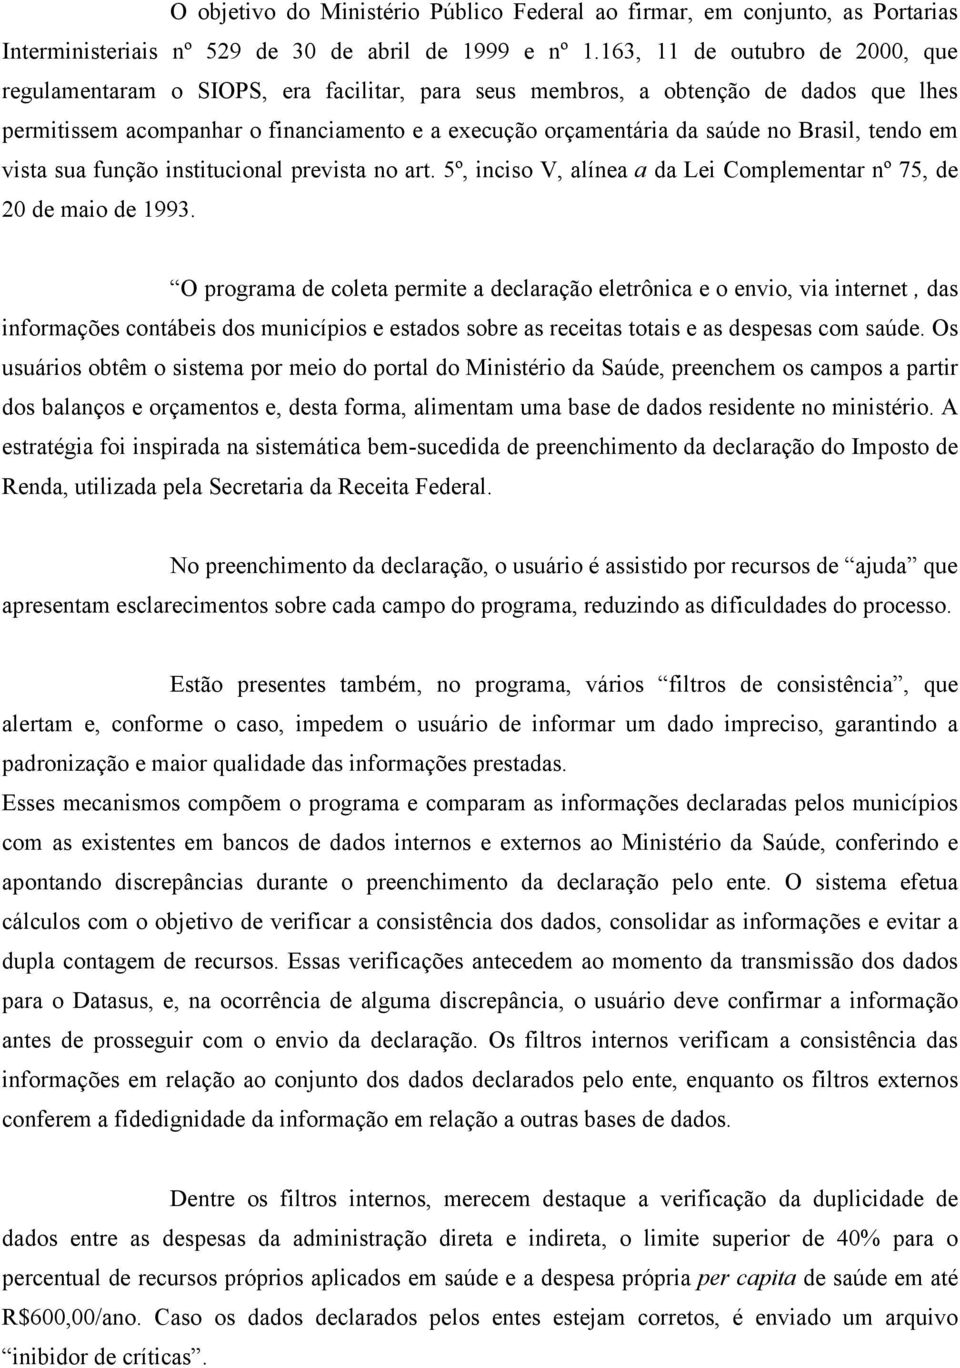 Brasil, tendo em vista sua função institucional prevista no art. 5º, inciso V, alínea a da Lei Complementar nº 75, de 20 de maio de 1993.